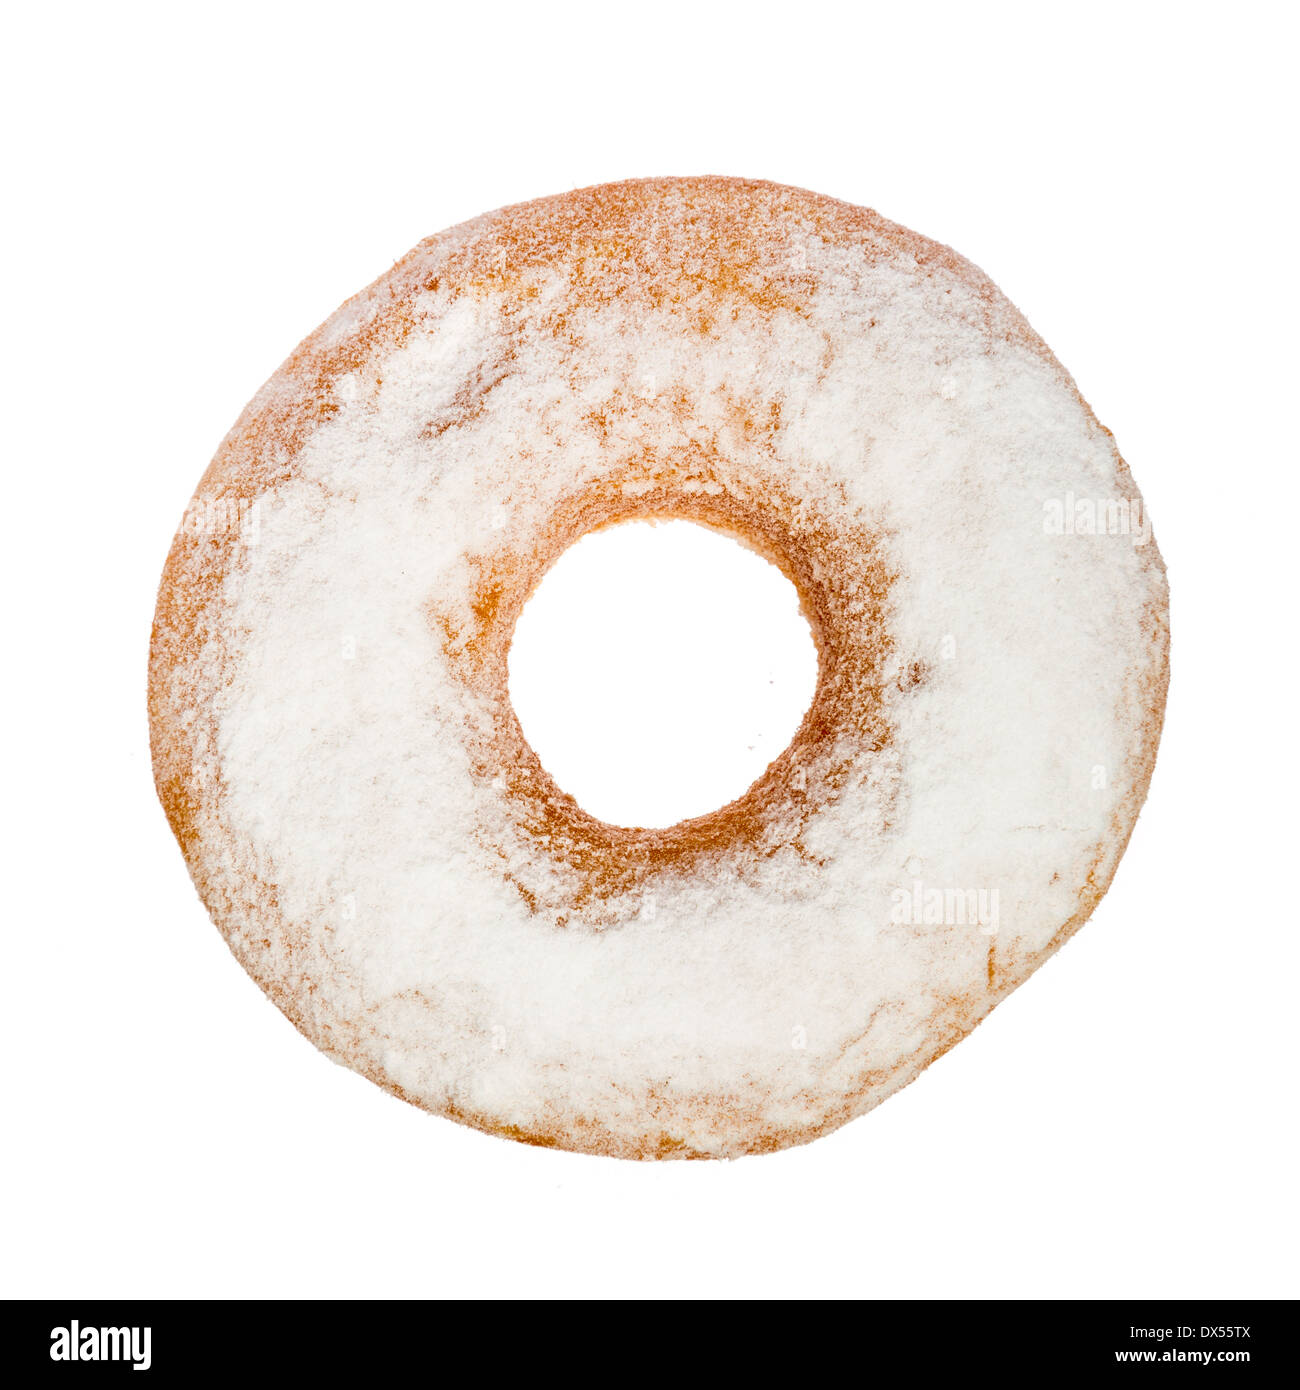 Vue rapprochée d'un beigne avec sucre, isolated on white Banque D'Images